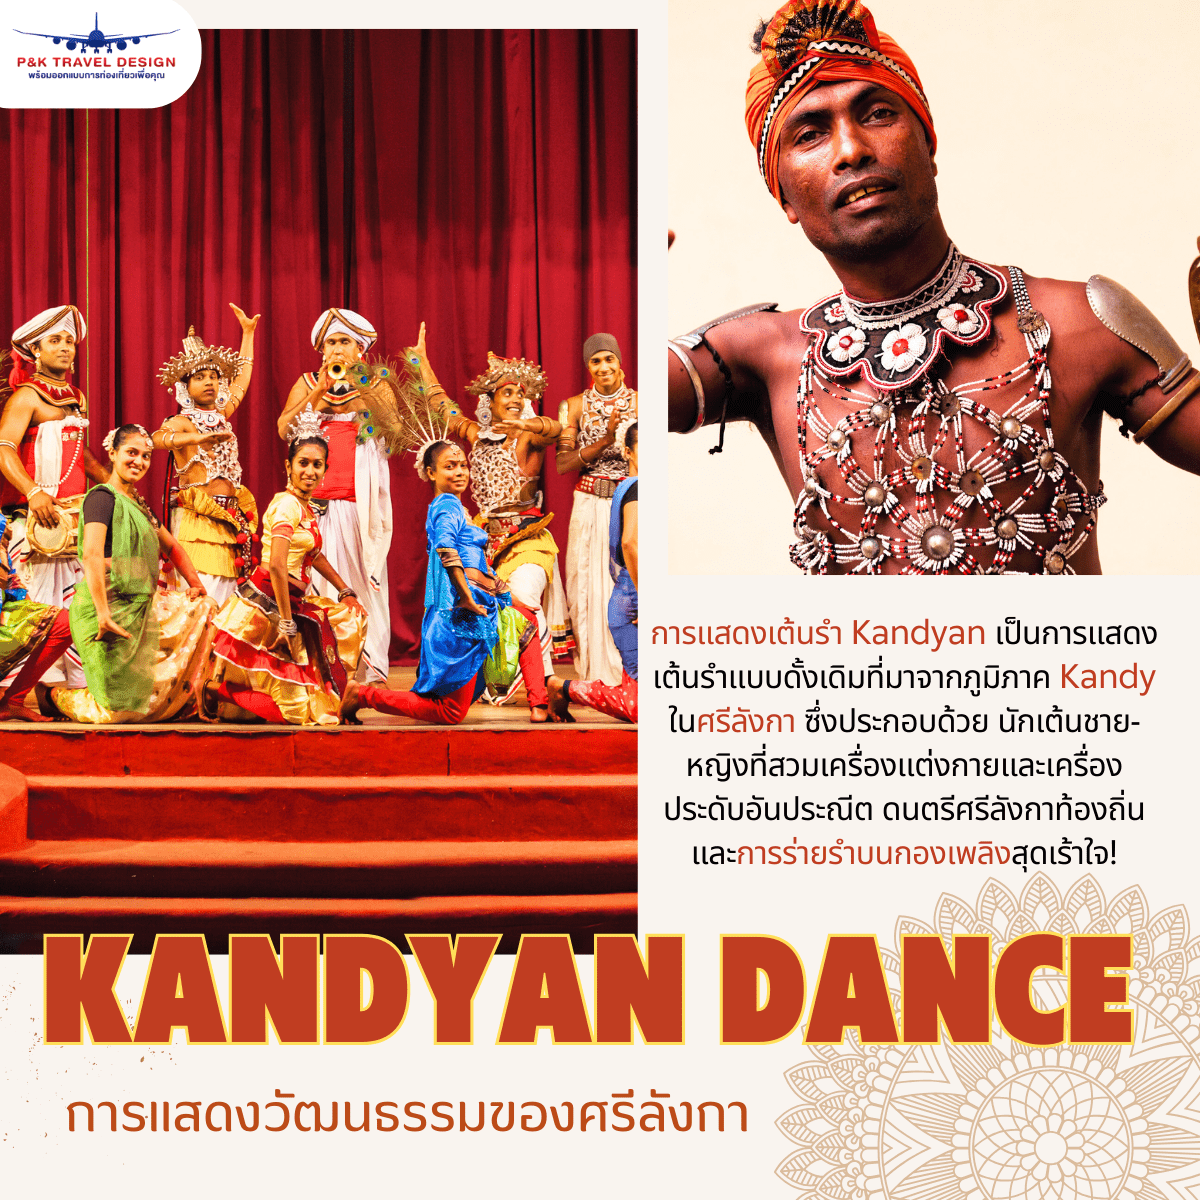 Kandyan Dance การแสดงวัฒนธรรมของศรีลังกา